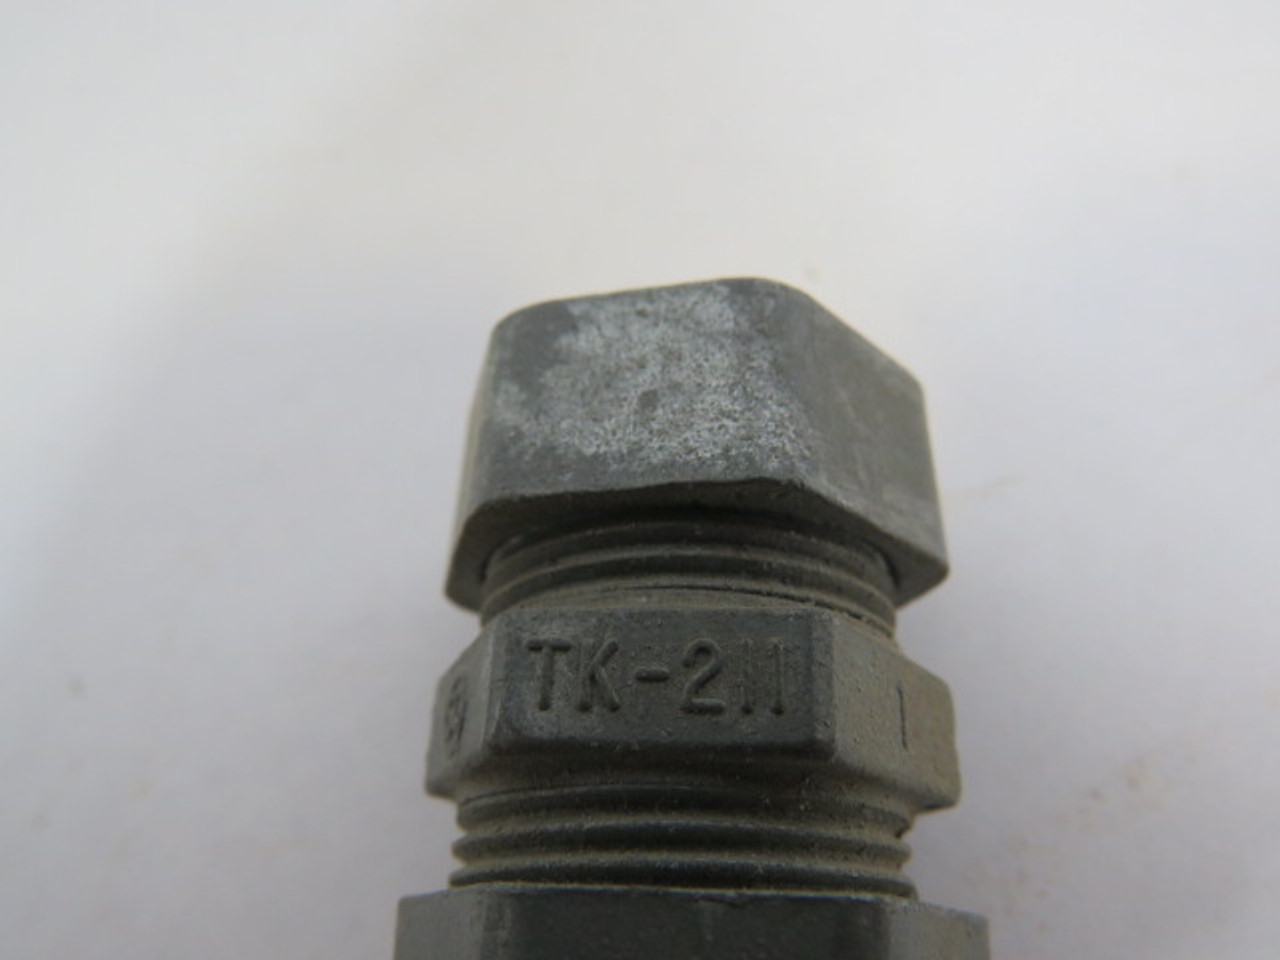 Halex TK-211 Zinc EMT Compression Coupling 1/2" Lot of 7 USED